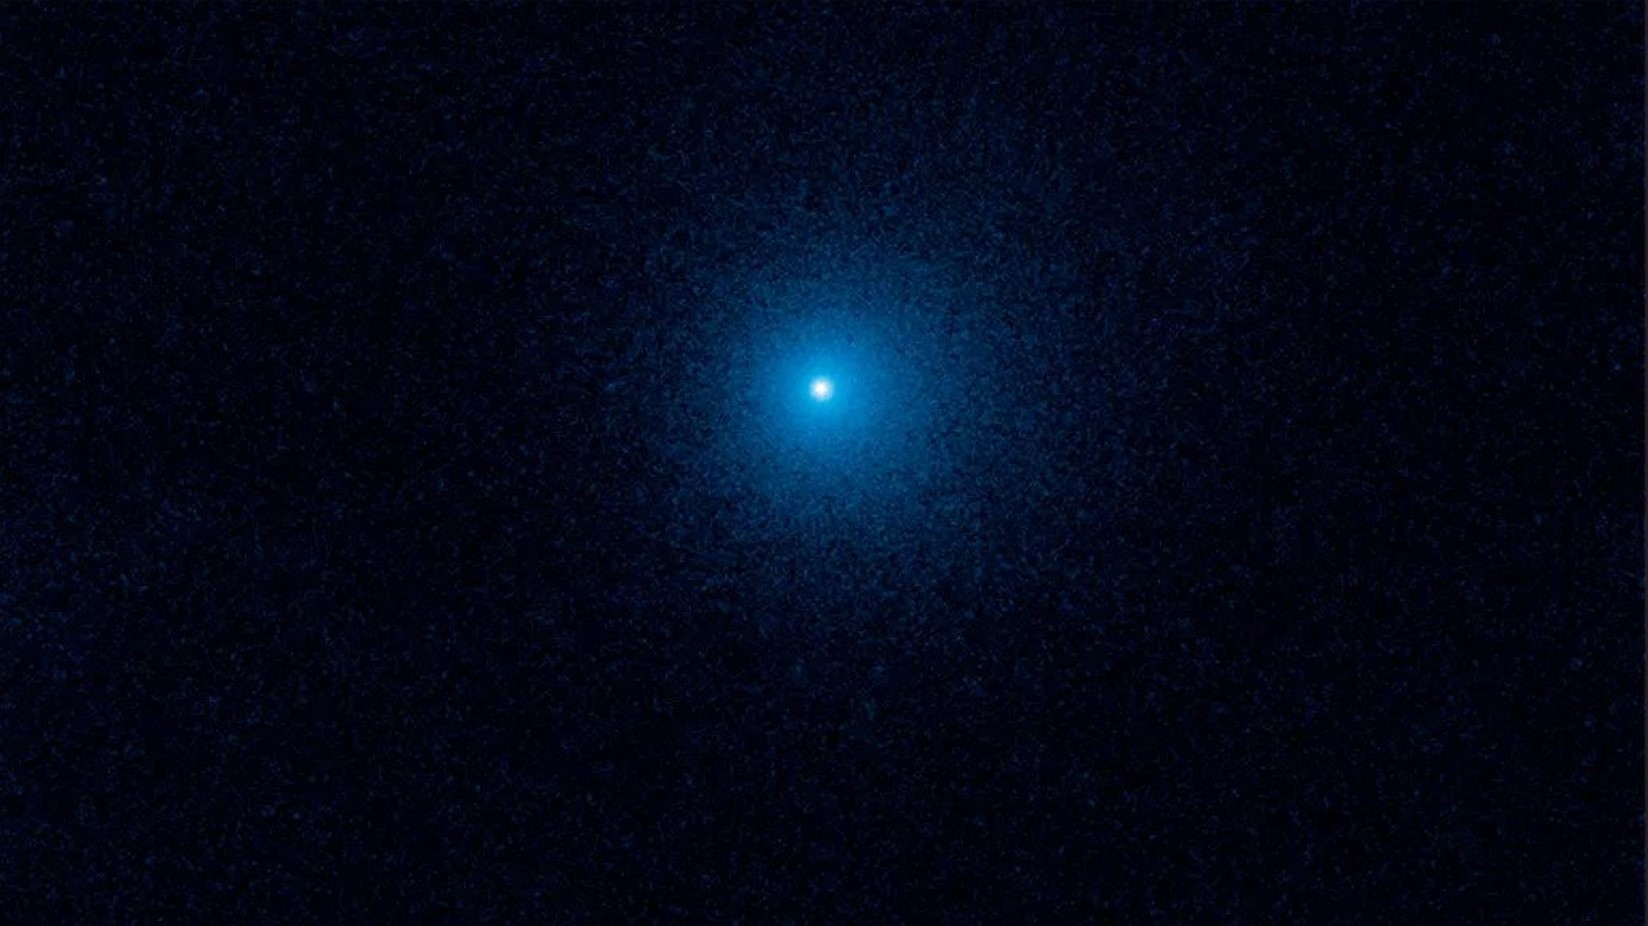 Kometa K2 zbliża się do Ziemi. Przygotujcie teleskopy, będzie można ją zobaczyć!